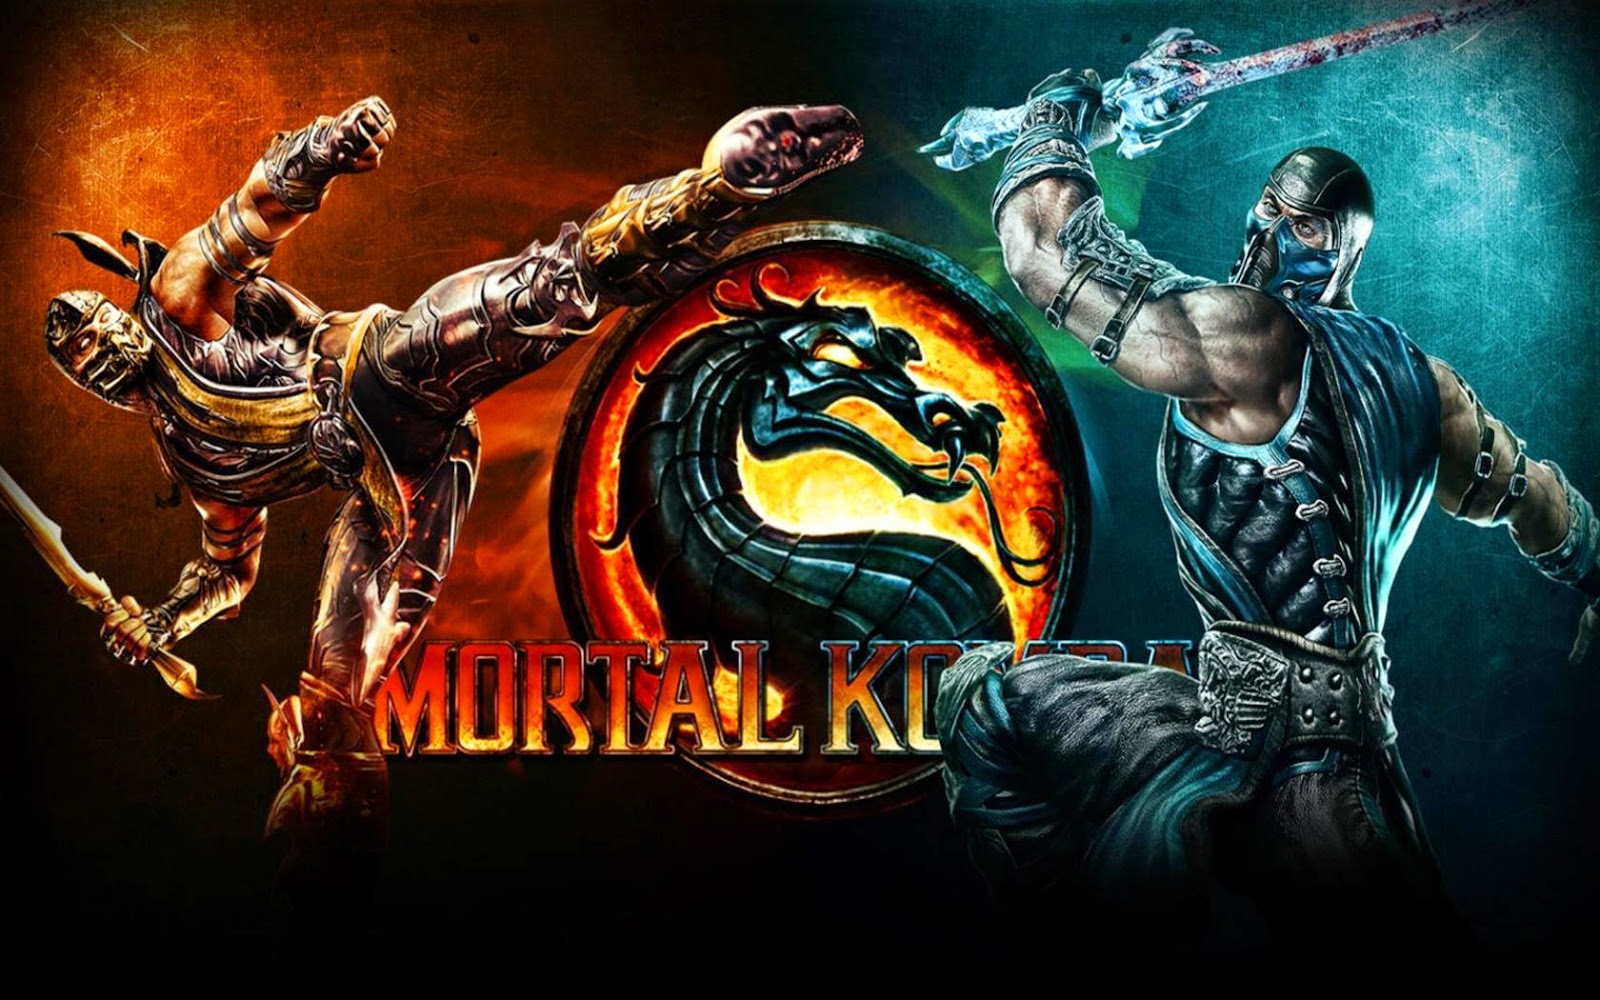 Mortal Kombat Backgrounds, Compatible - PC, Mobile, Gadgets| 1600x1000 px